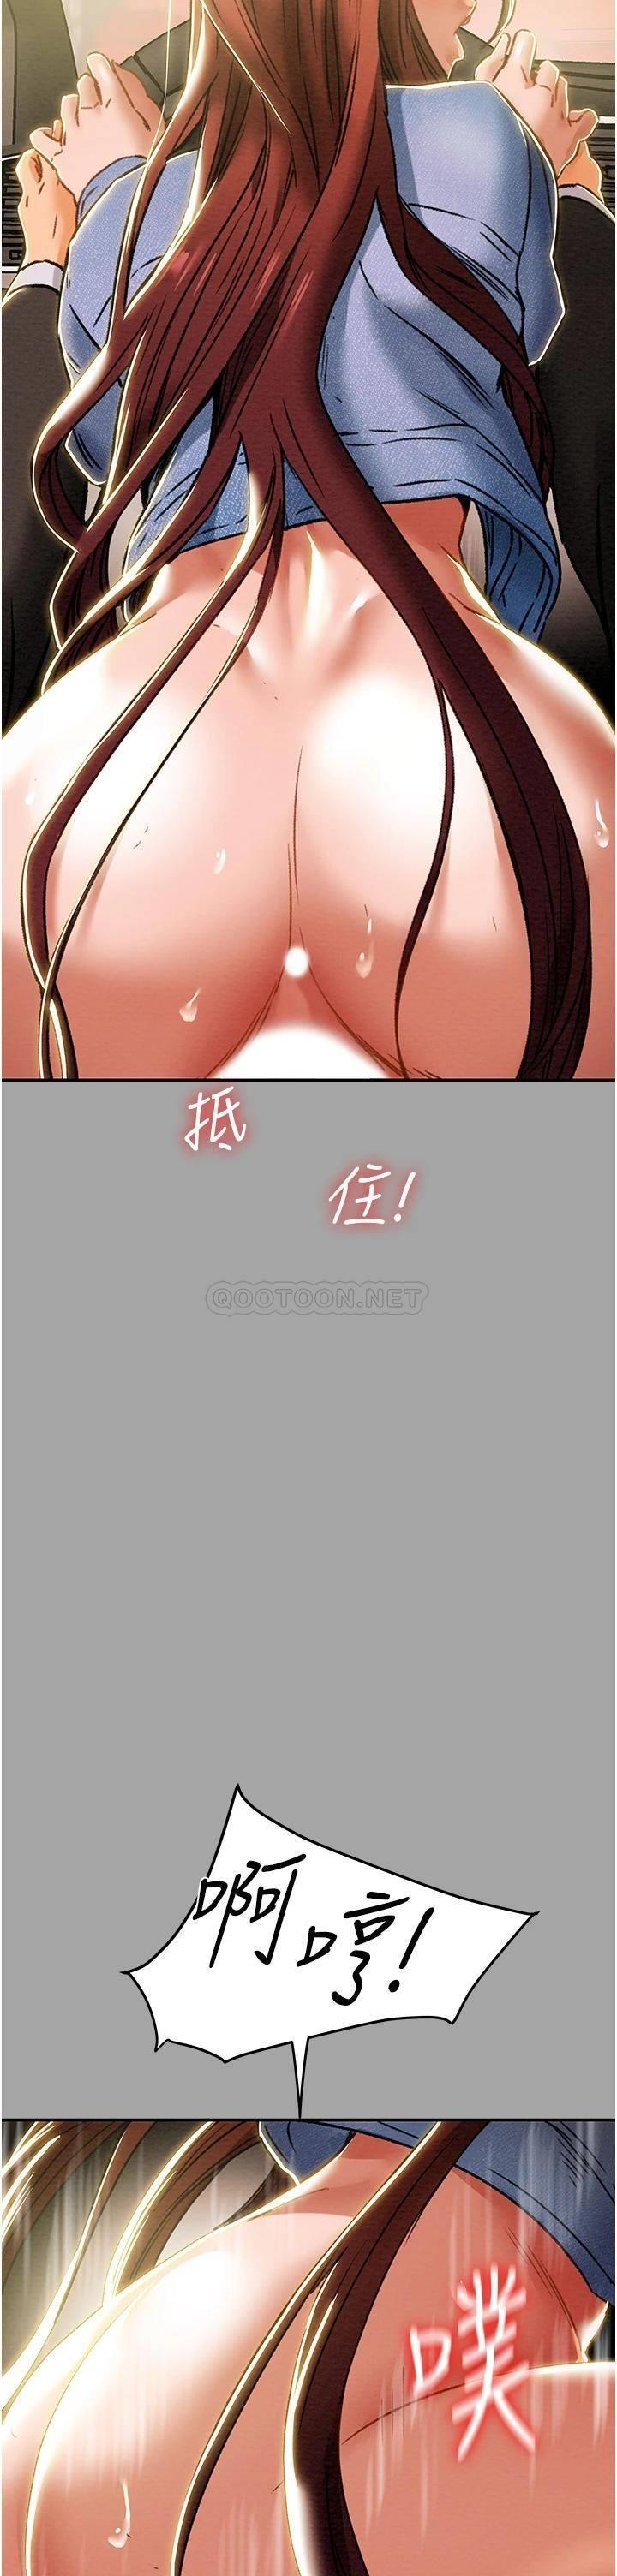 韩国污漫画 純情女攻略計劃 第47话比方向盘更灵活的腰肢 48